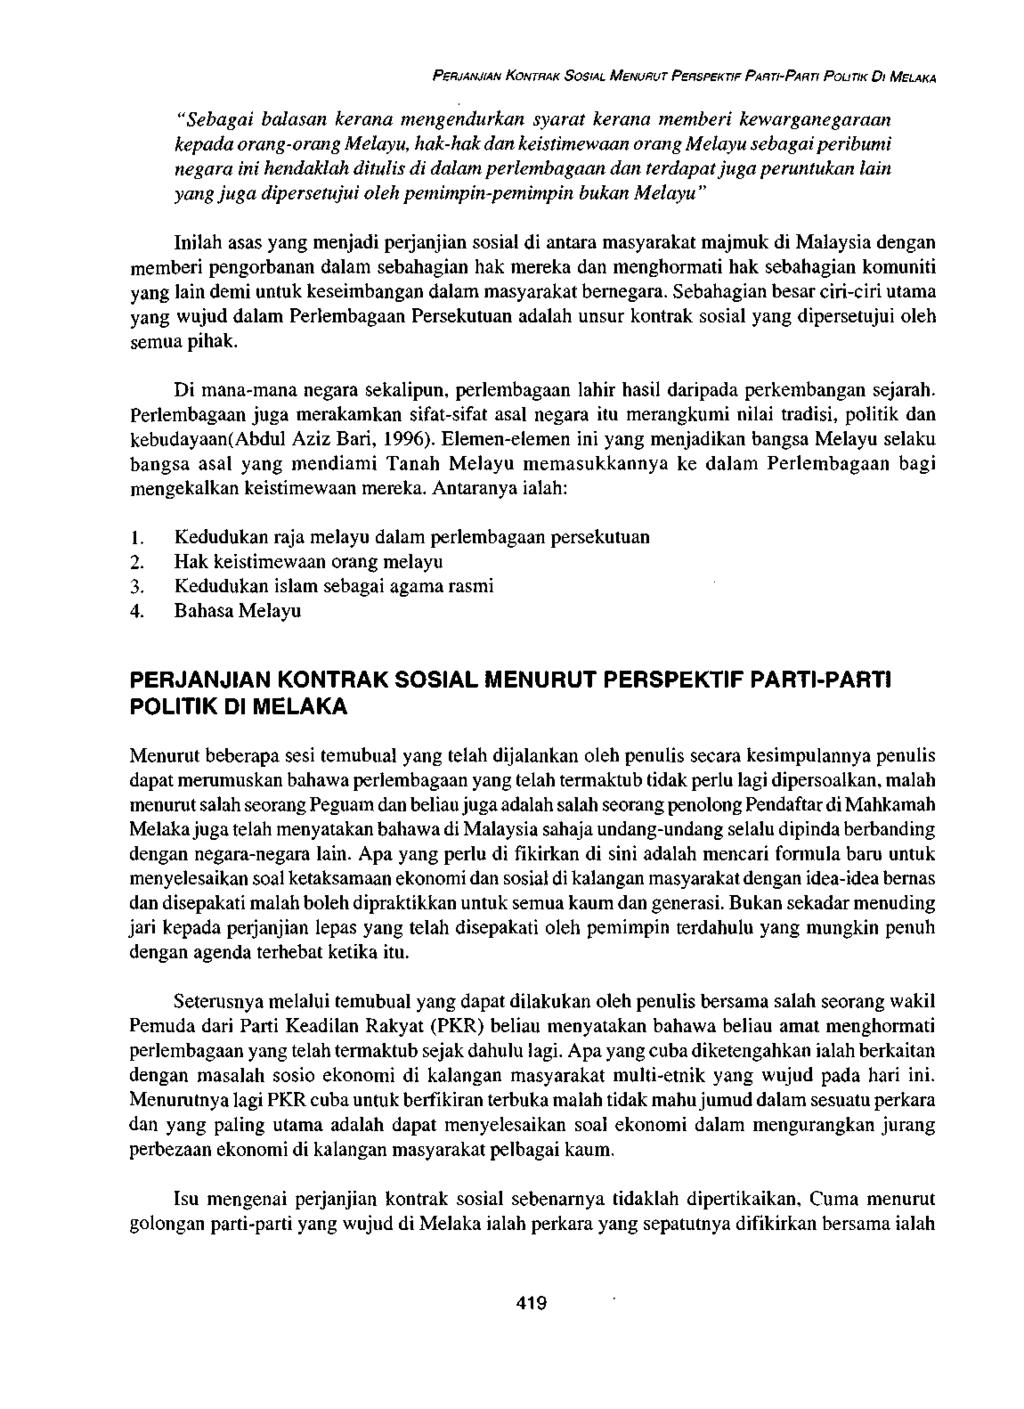 PERJANJIAN KONTRAK SOSIAL MENURUT PERSPEKTIF PARTI-PARTI POLITIK DI MELAKA "Sebagai balasan kerana mengendurkan syarat kerana memberi kewarganegaraan kepada orang-orang Melayu, hak-hak dan